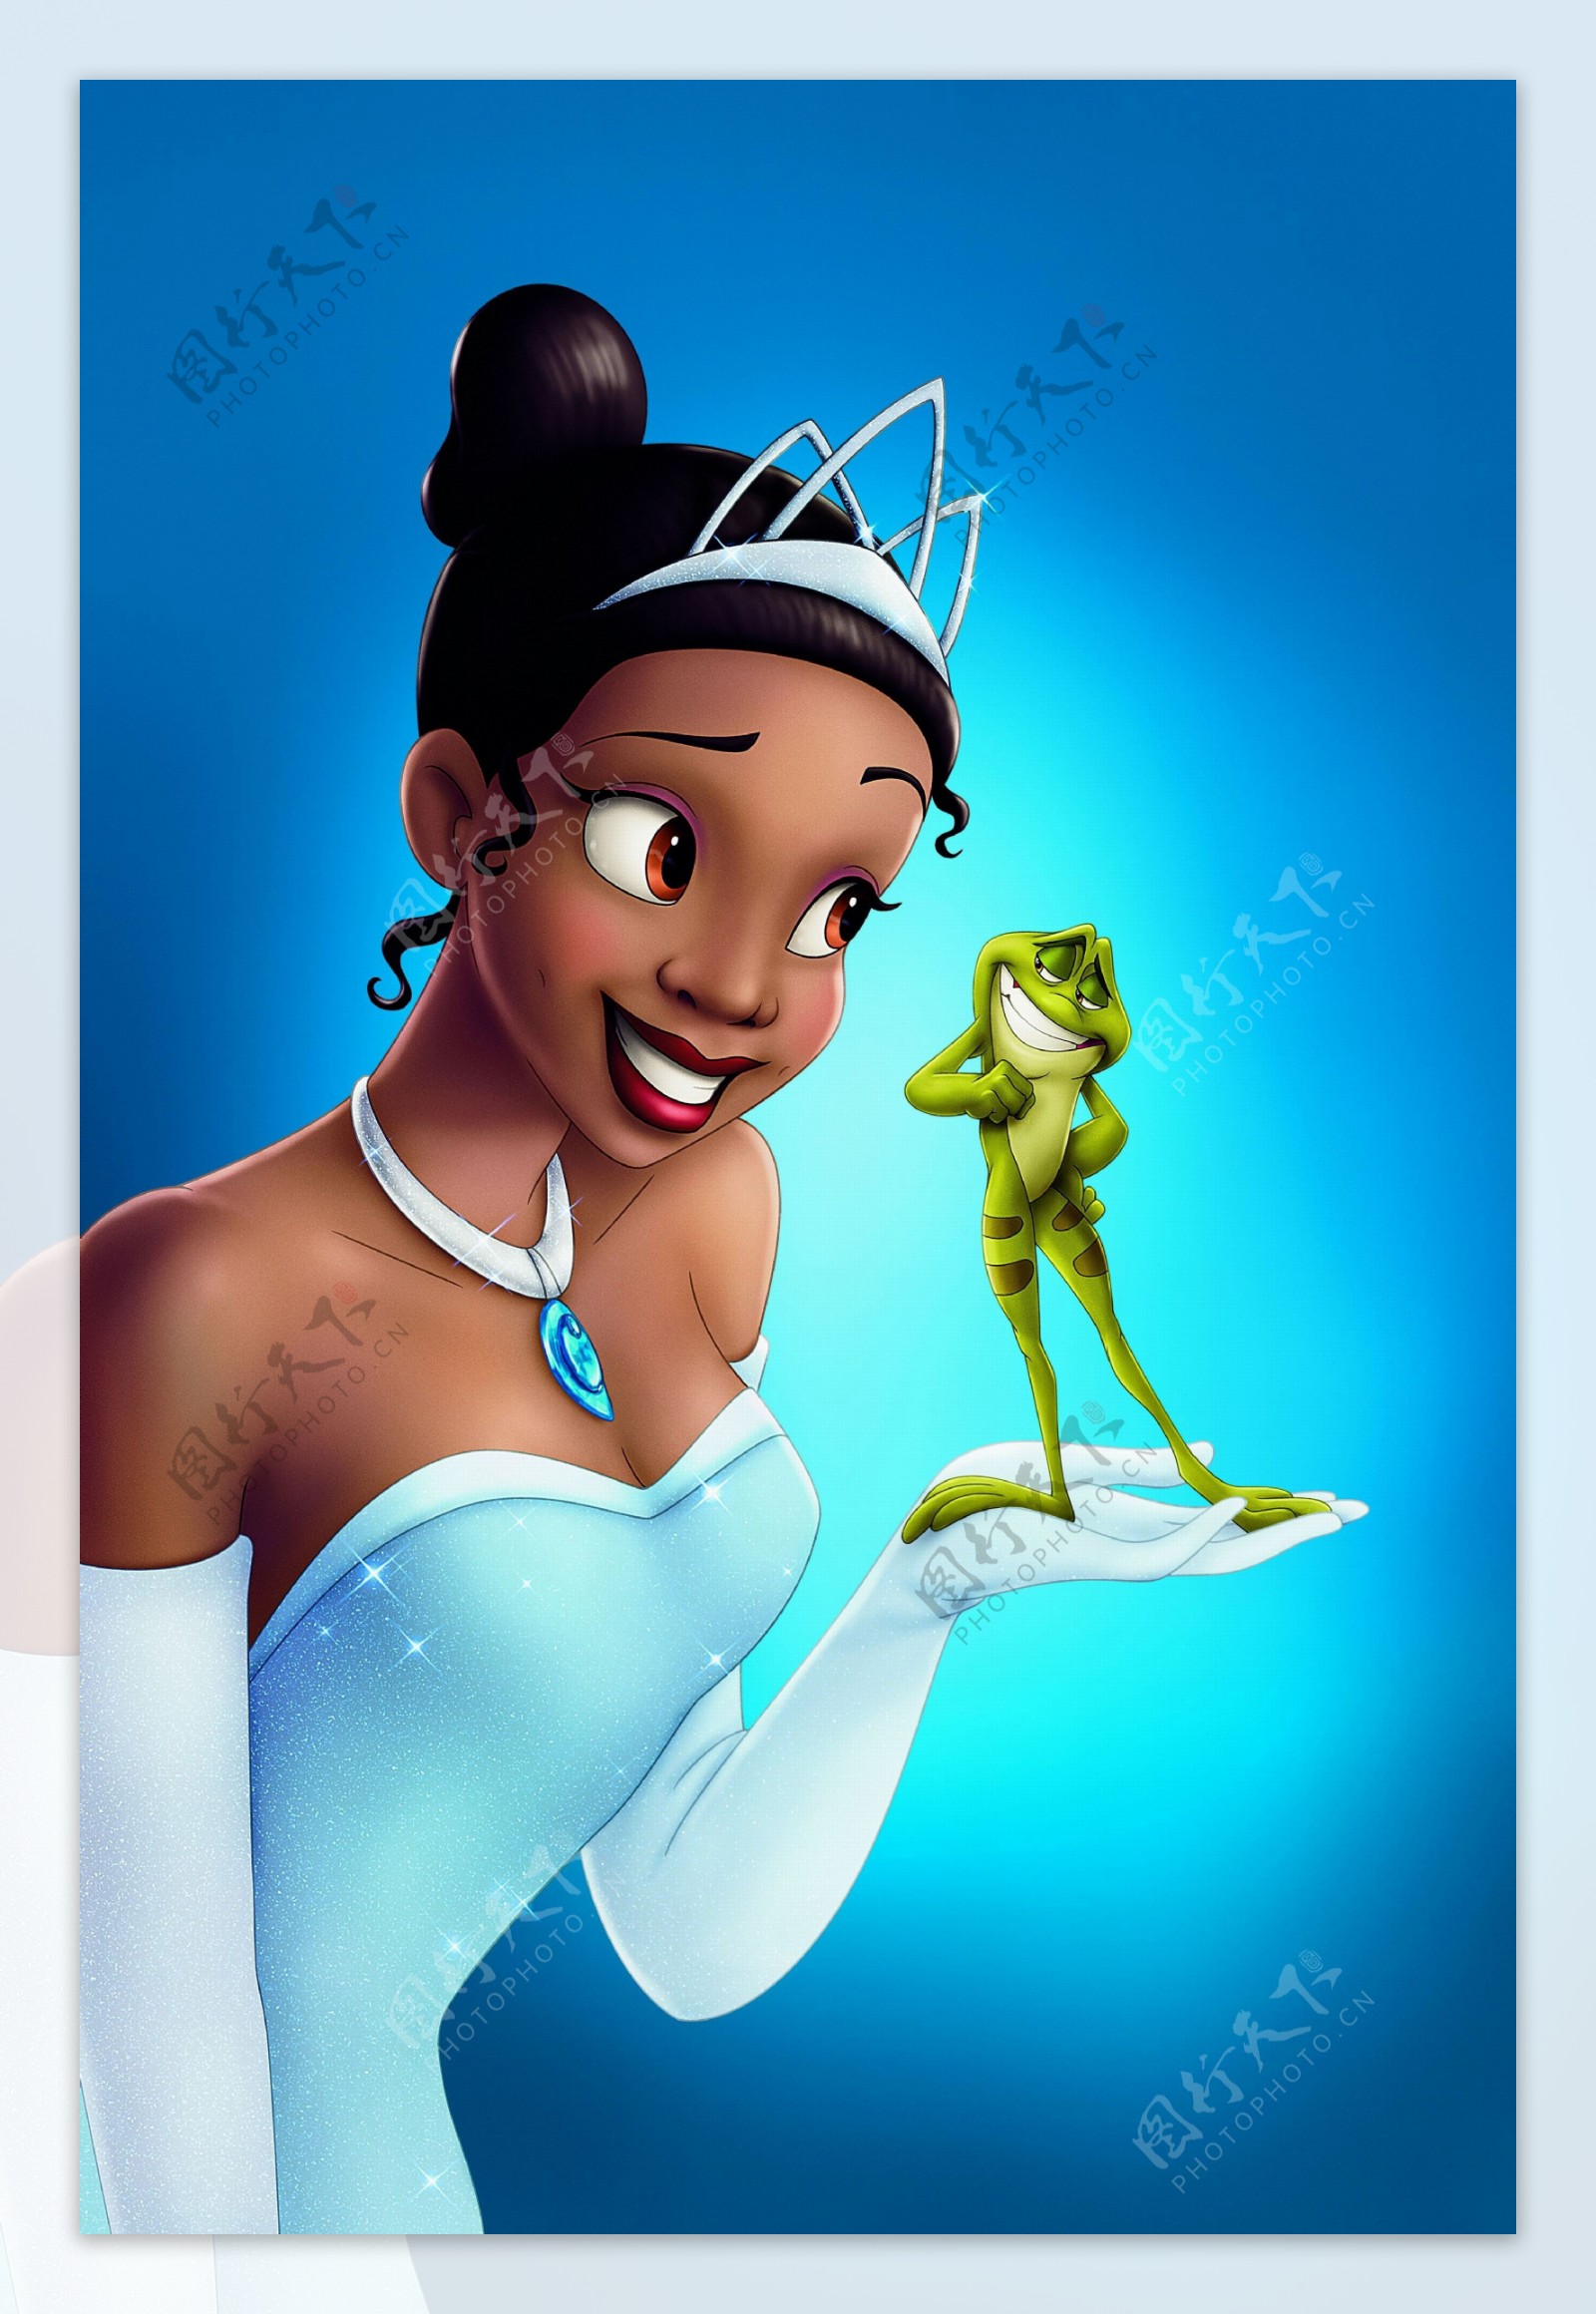 公主与青蛙